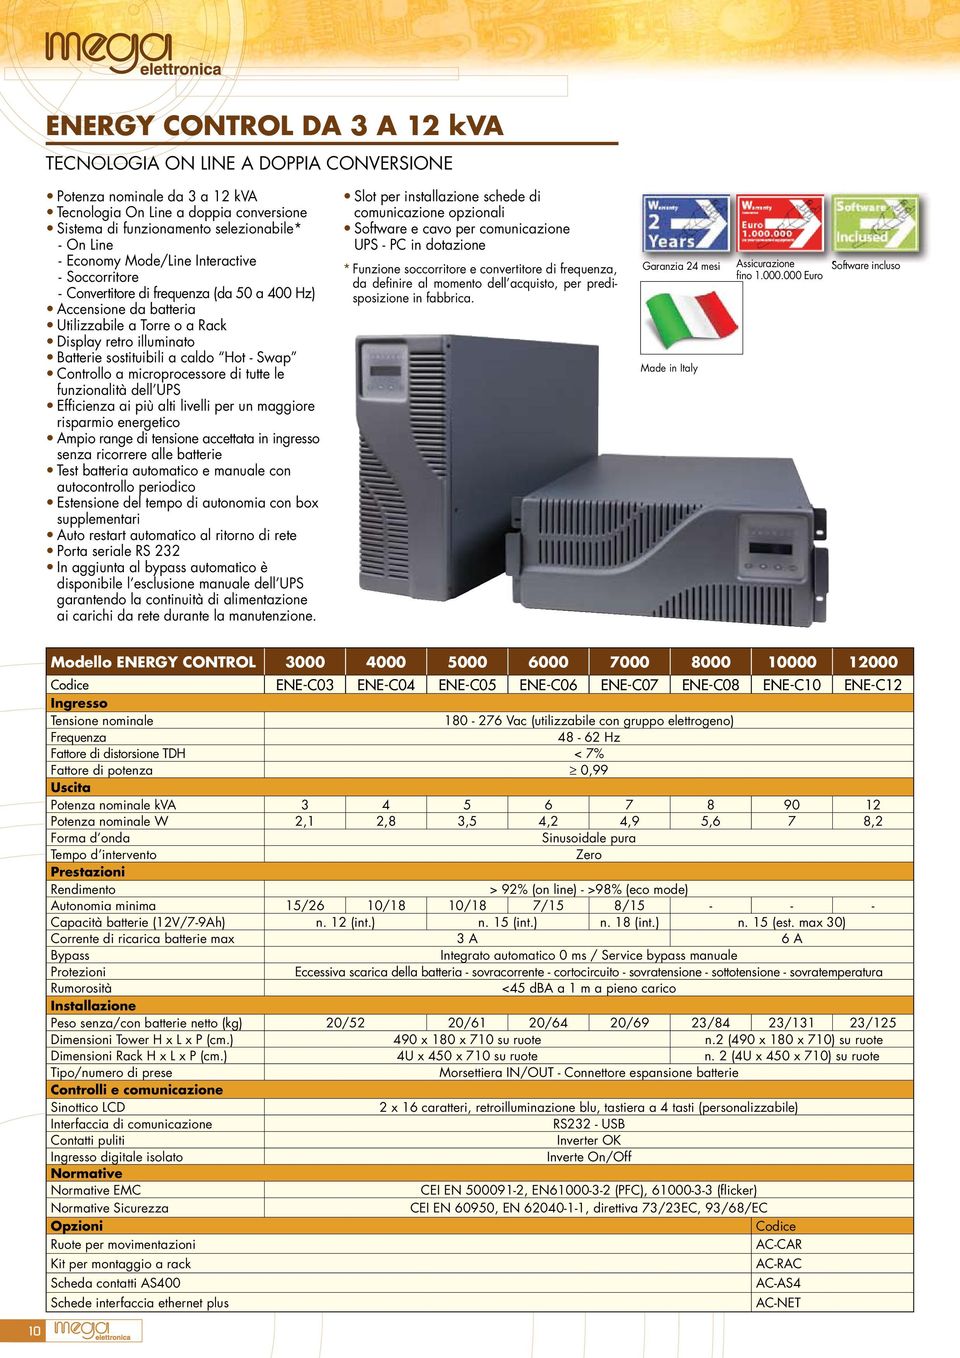 Swap Controllo a microprocessore di tutte le funzionalità dell UPS Efficienza ai più alti livelli per un maggiore risparmio energetico Ampio range di tensione accettata in ingresso senza ricorrere